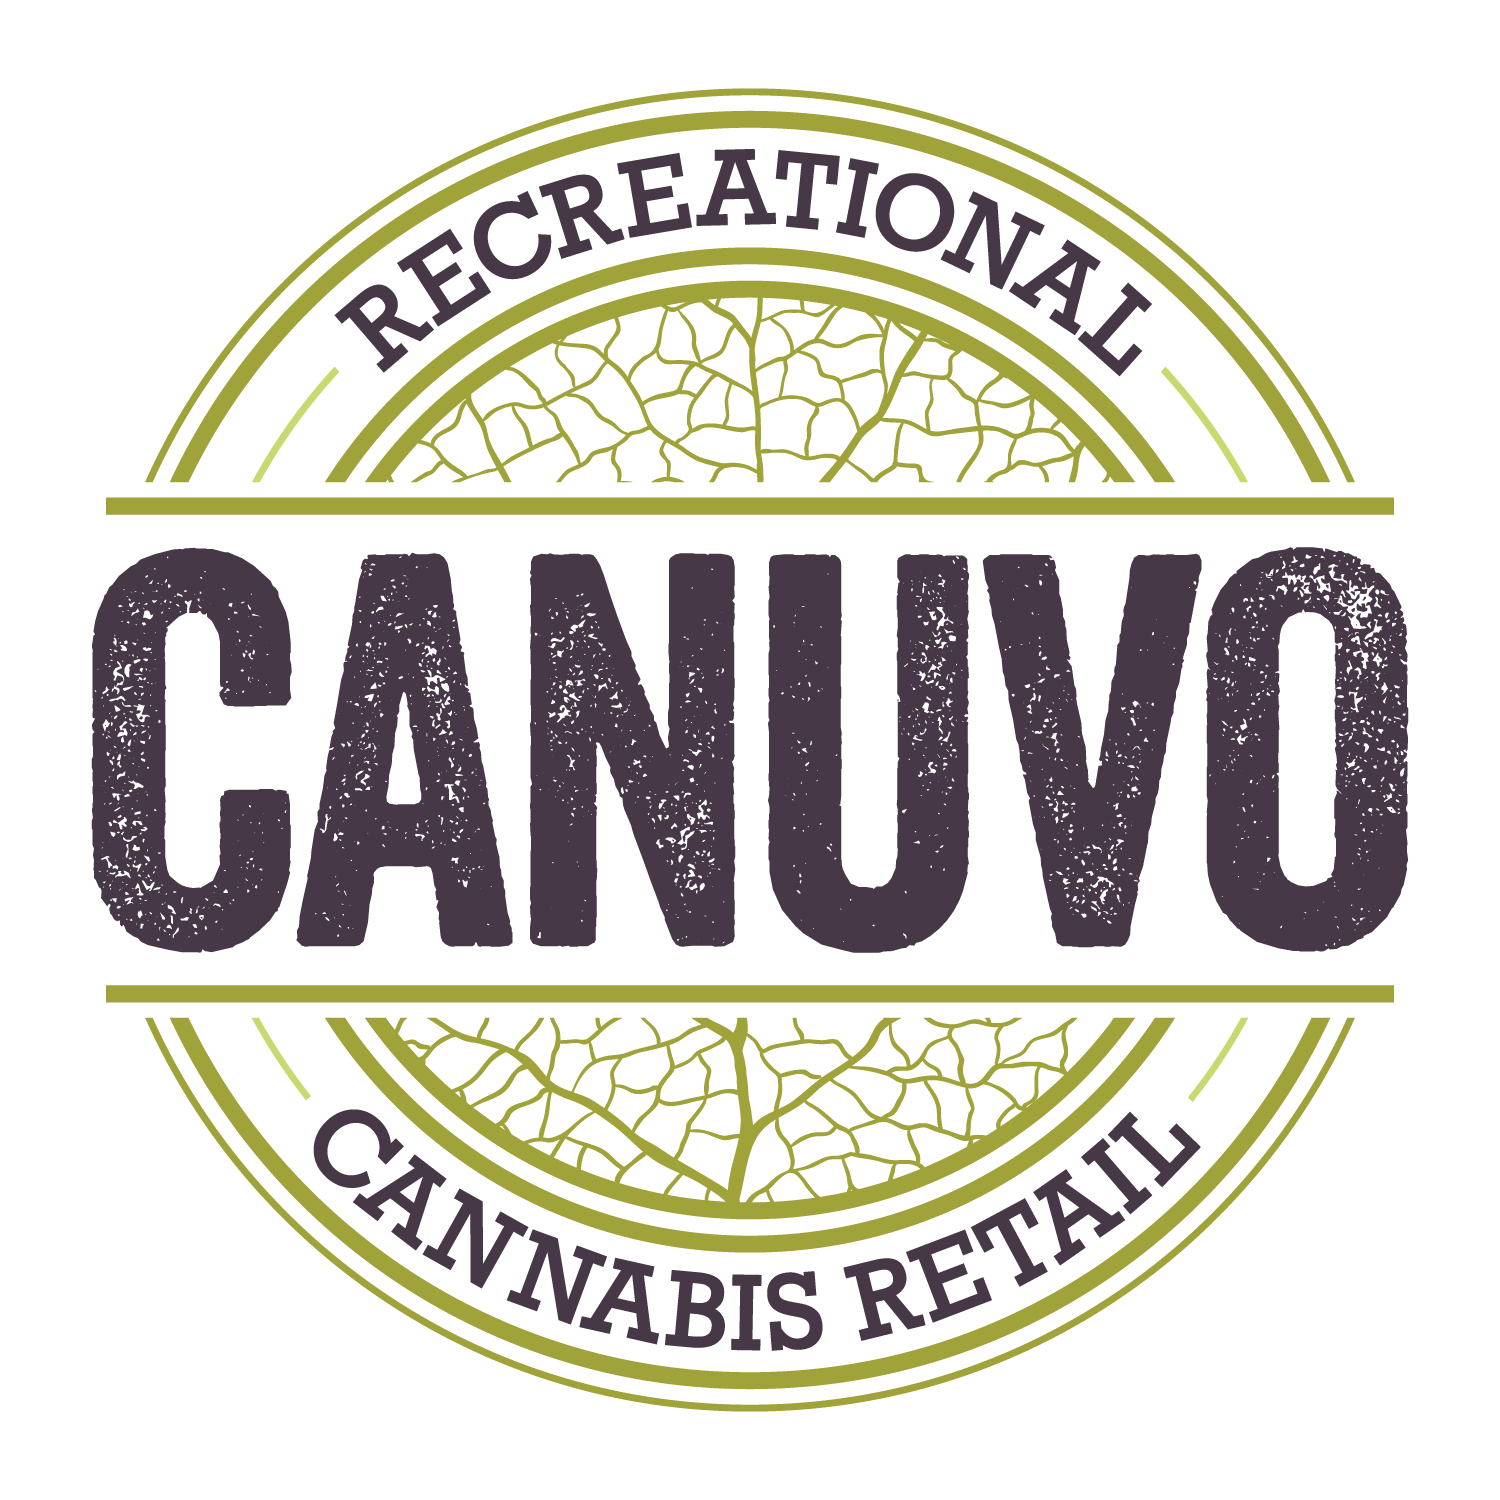 Canuvo Medical Cannabis Retail